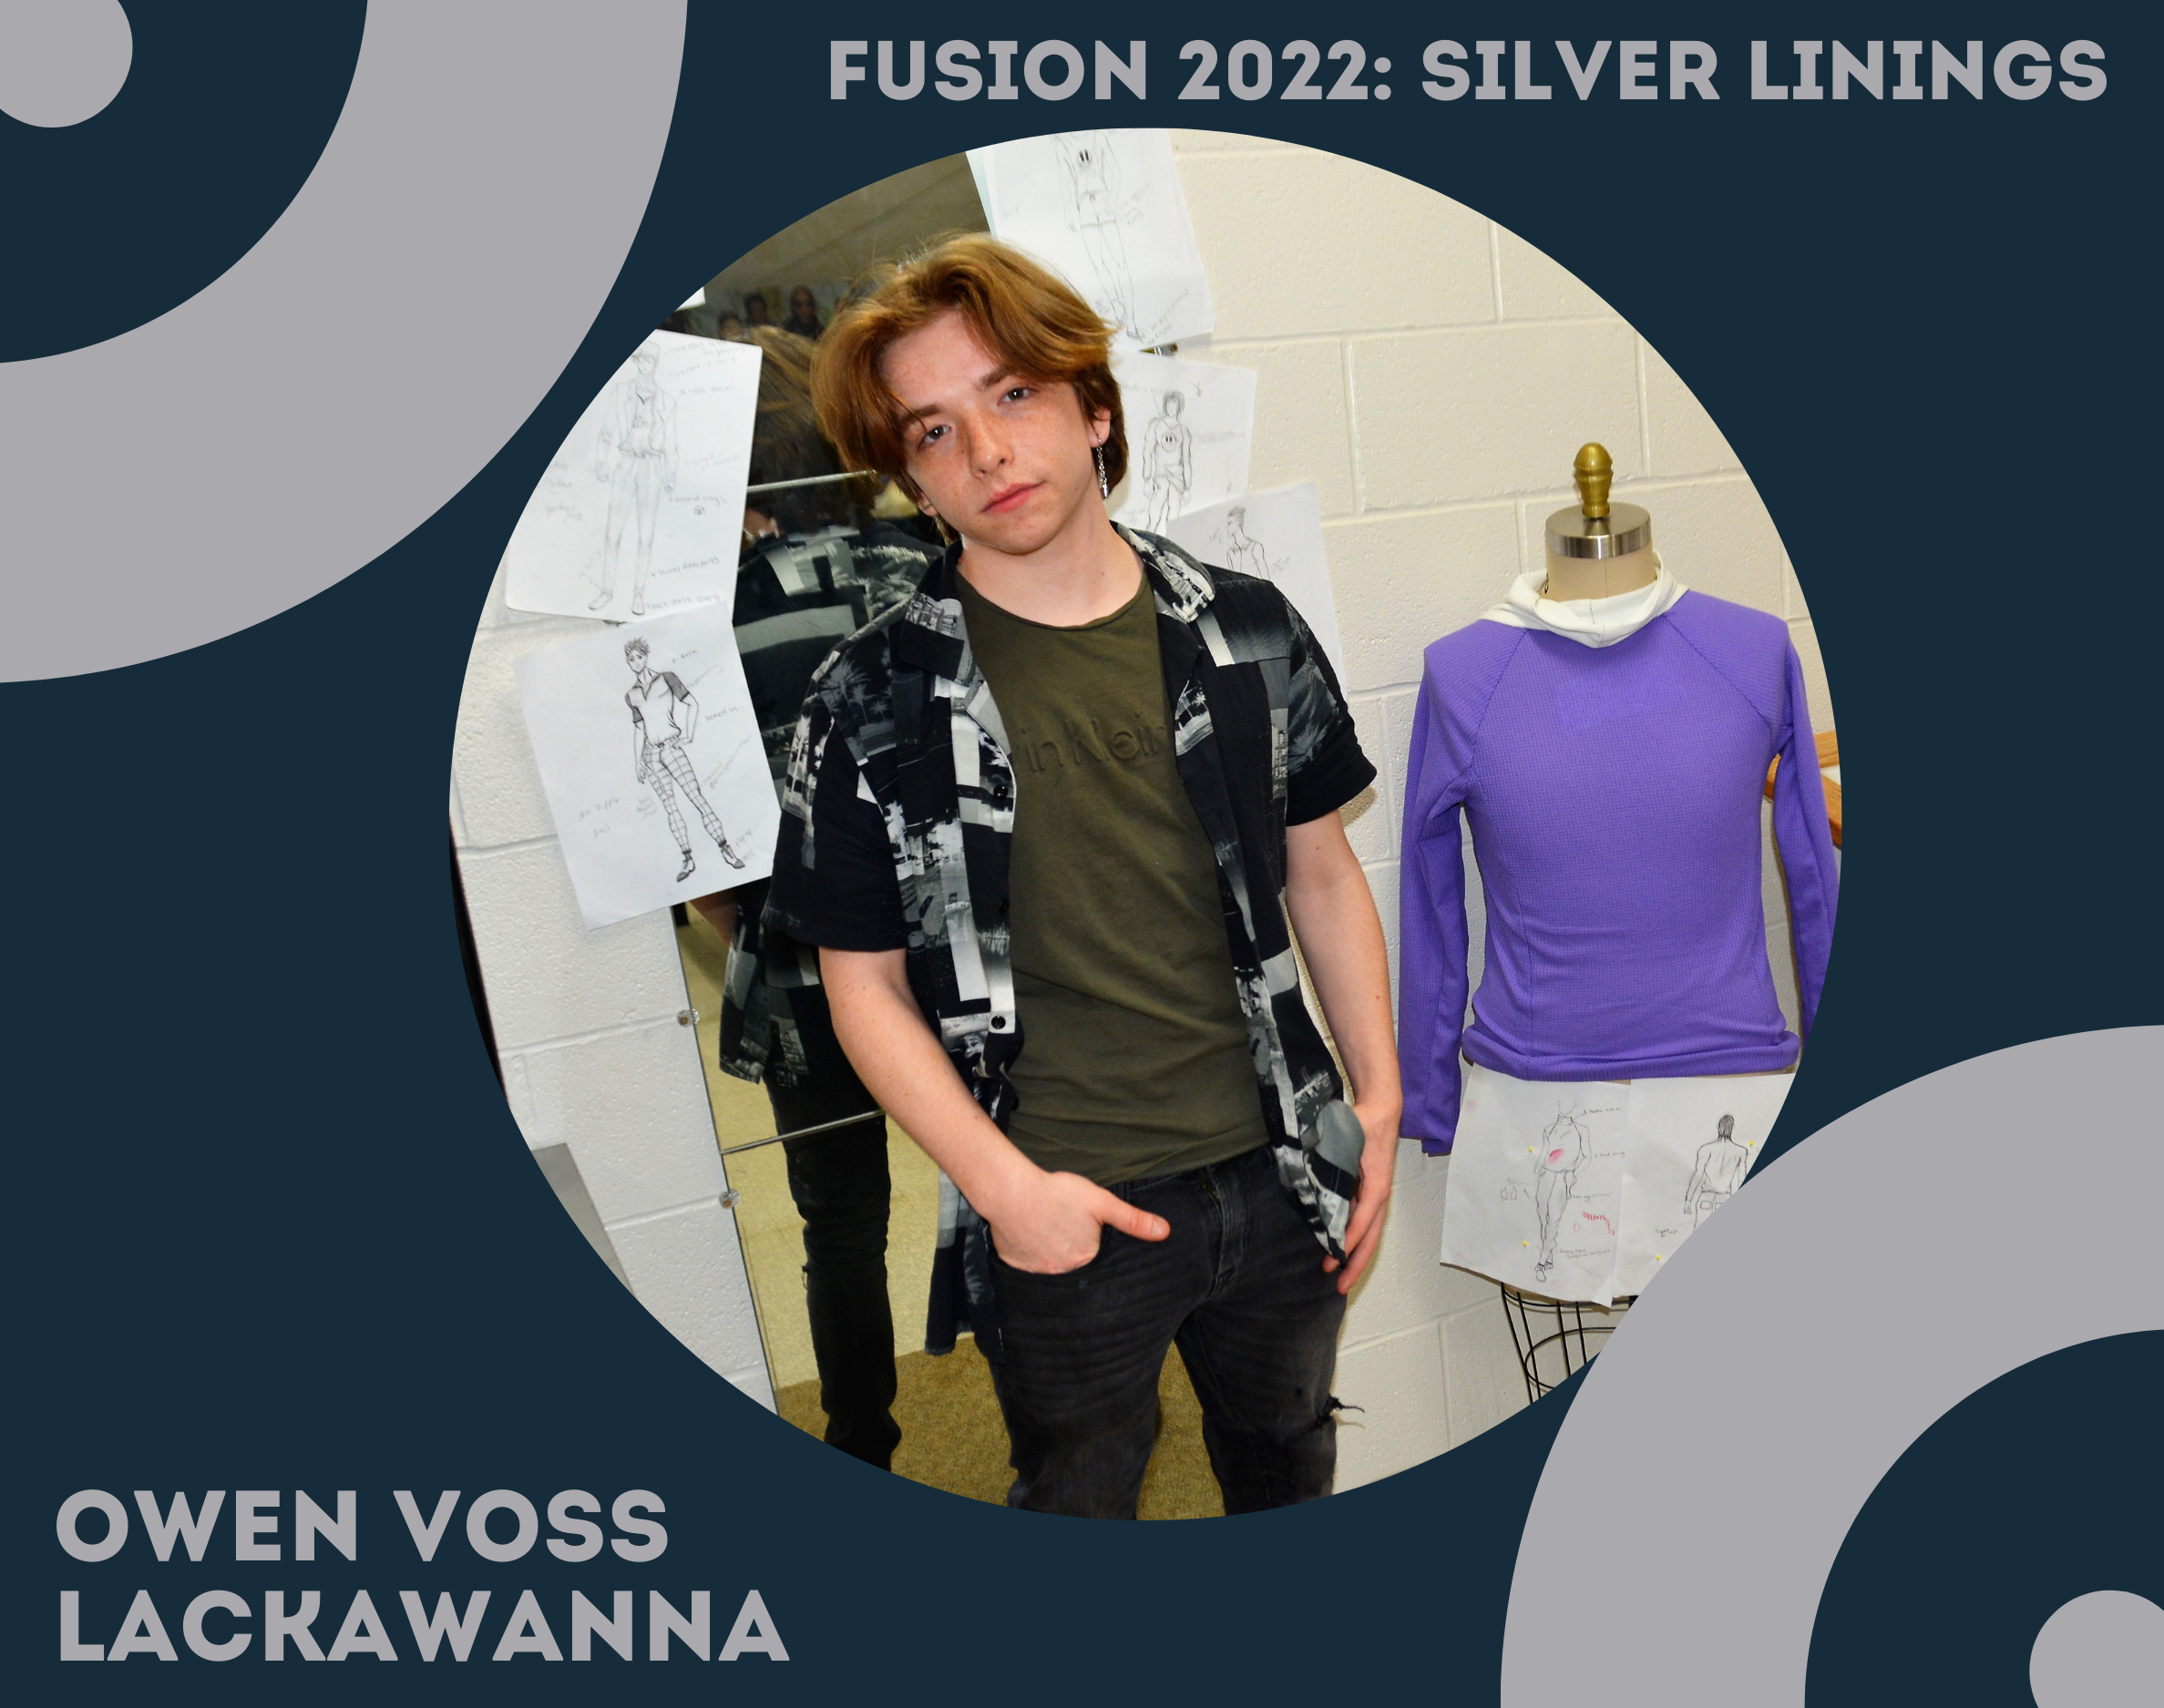 Fusion 2022: Silver Linings. Owen Voss, Lackawanna